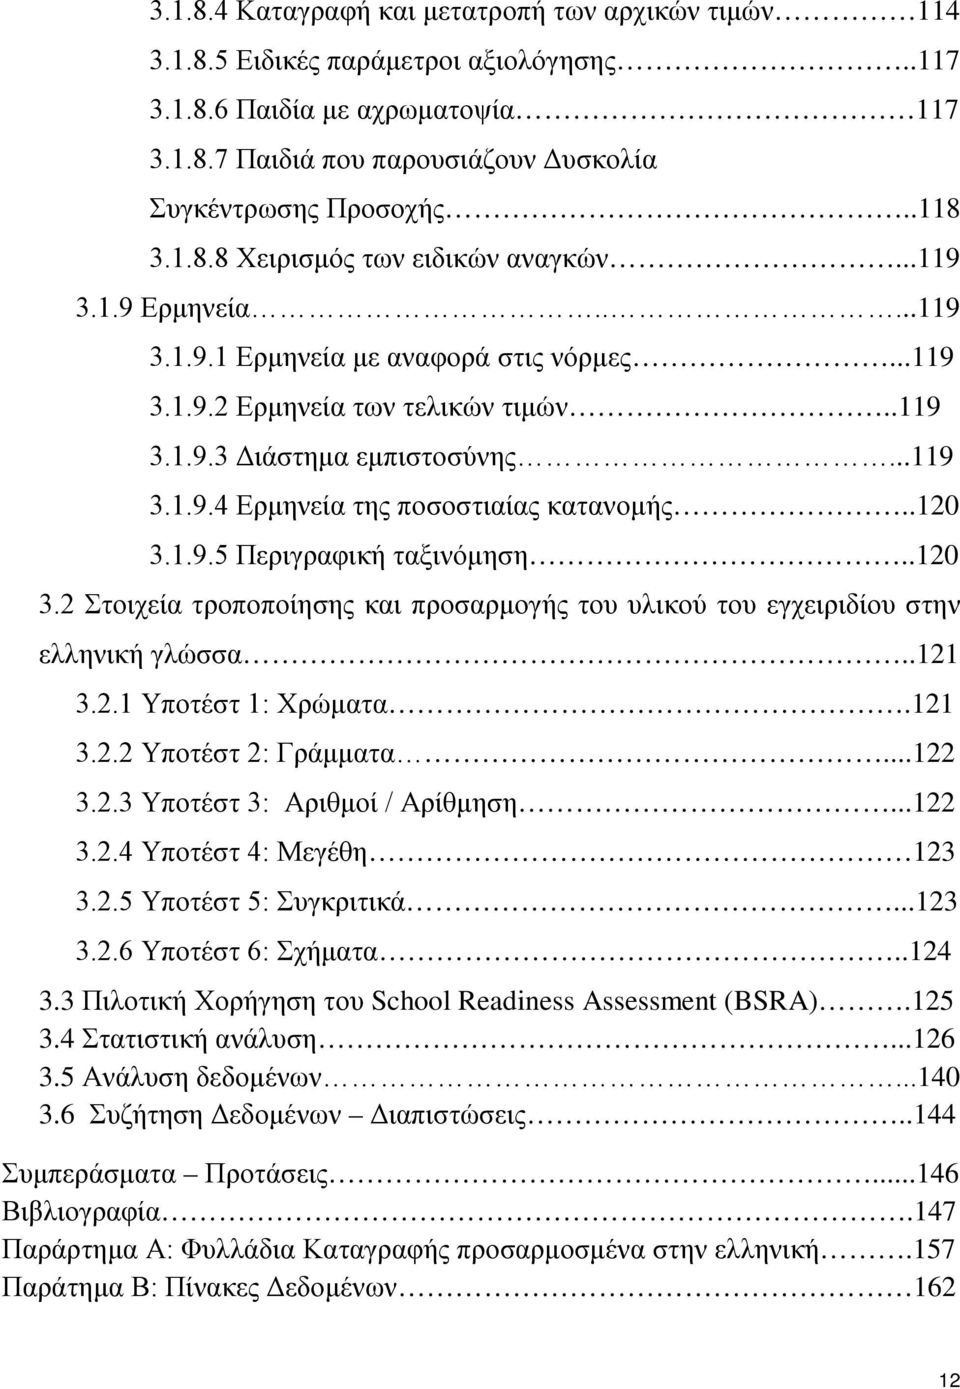 .120 3.1.9.5 Περιγραφική ταξινόμηση..120 3.2 Στοιχεία τροποποίησης και προσαρμογής του υλικού του εγχειριδίου στην ελληνική γλώσσα..121 3.2.1 Υποτέστ 1: Χρώματα.121 3.2.2 Υποτέστ 2: Γράμματα...122 3.